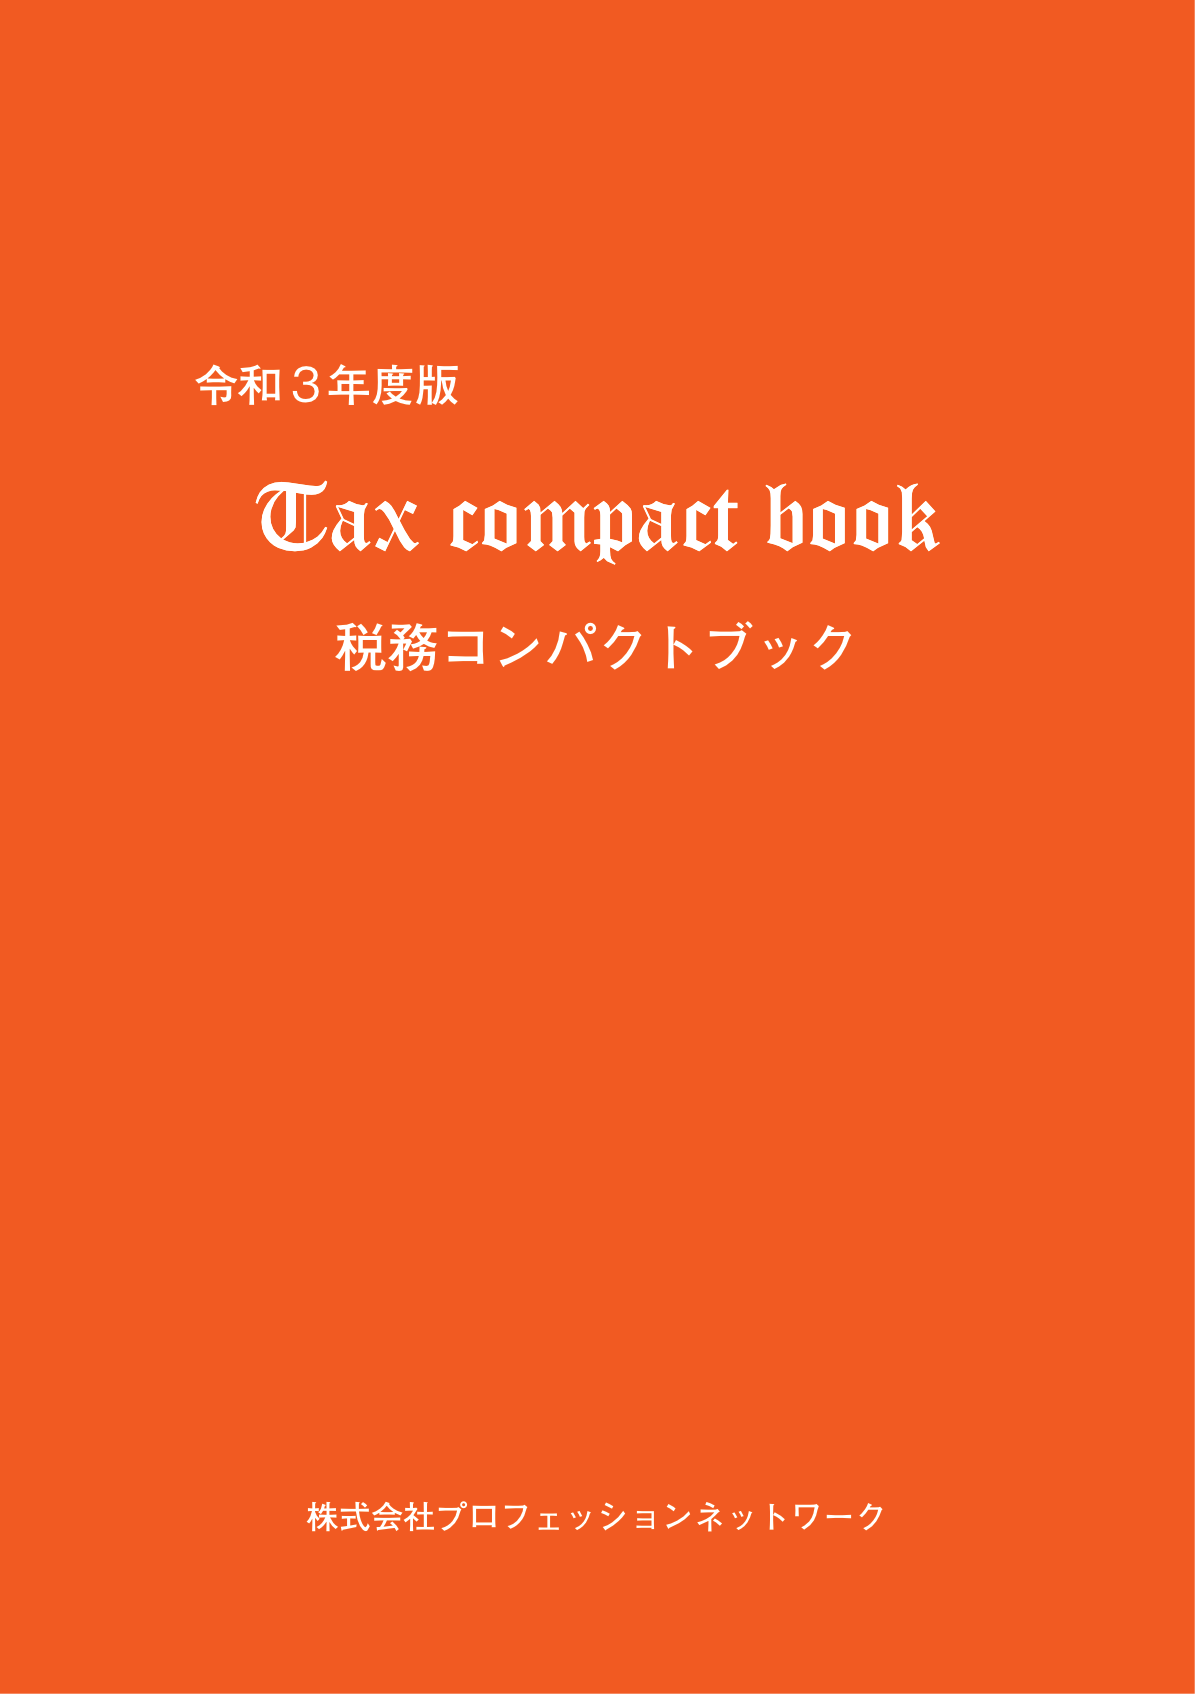 『税務コンパクトブック』（令和3年度版）